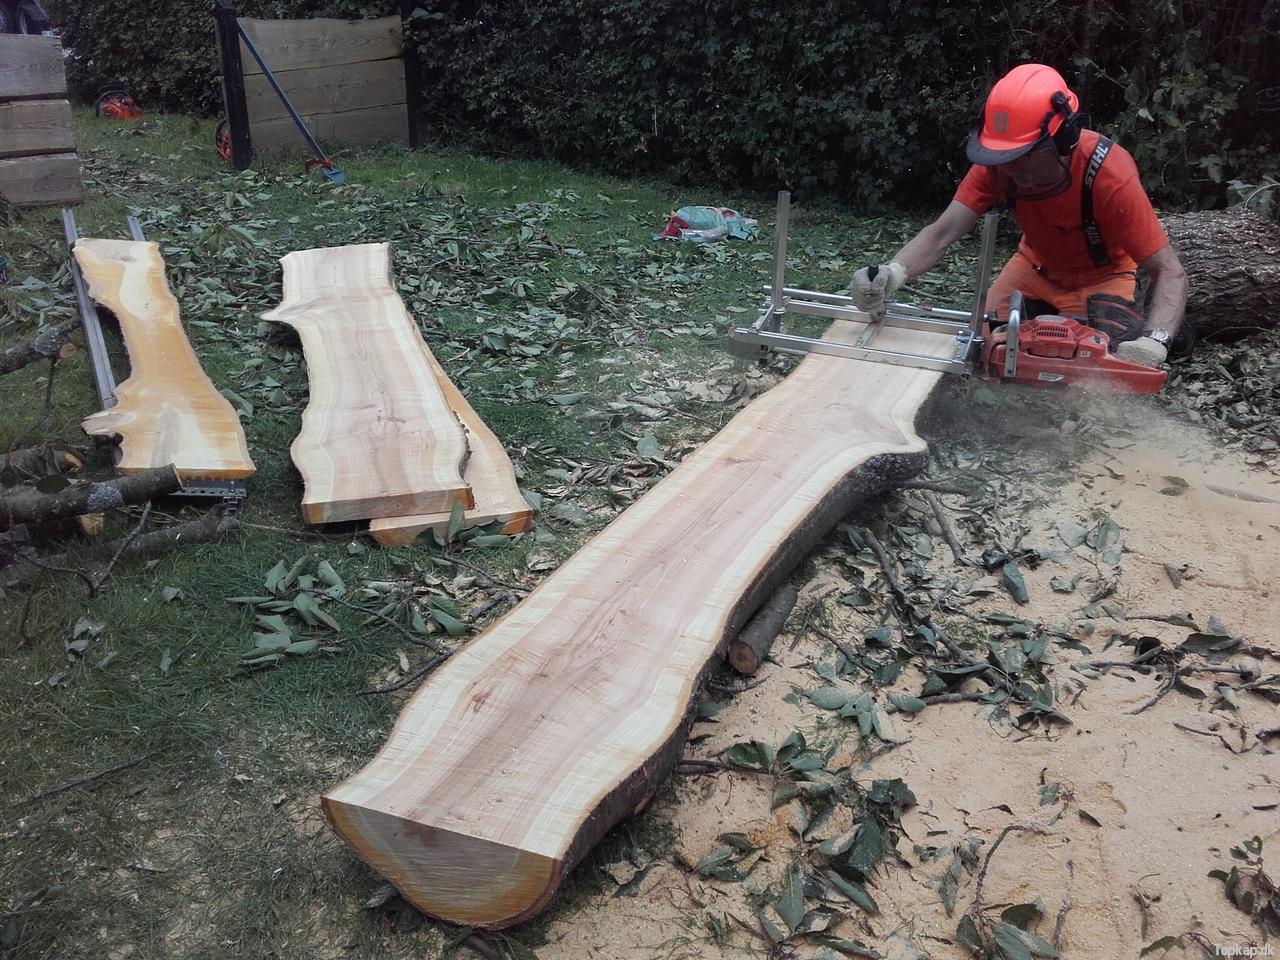 Træ-til-ting - Bænke, borde, stubbe, planker...